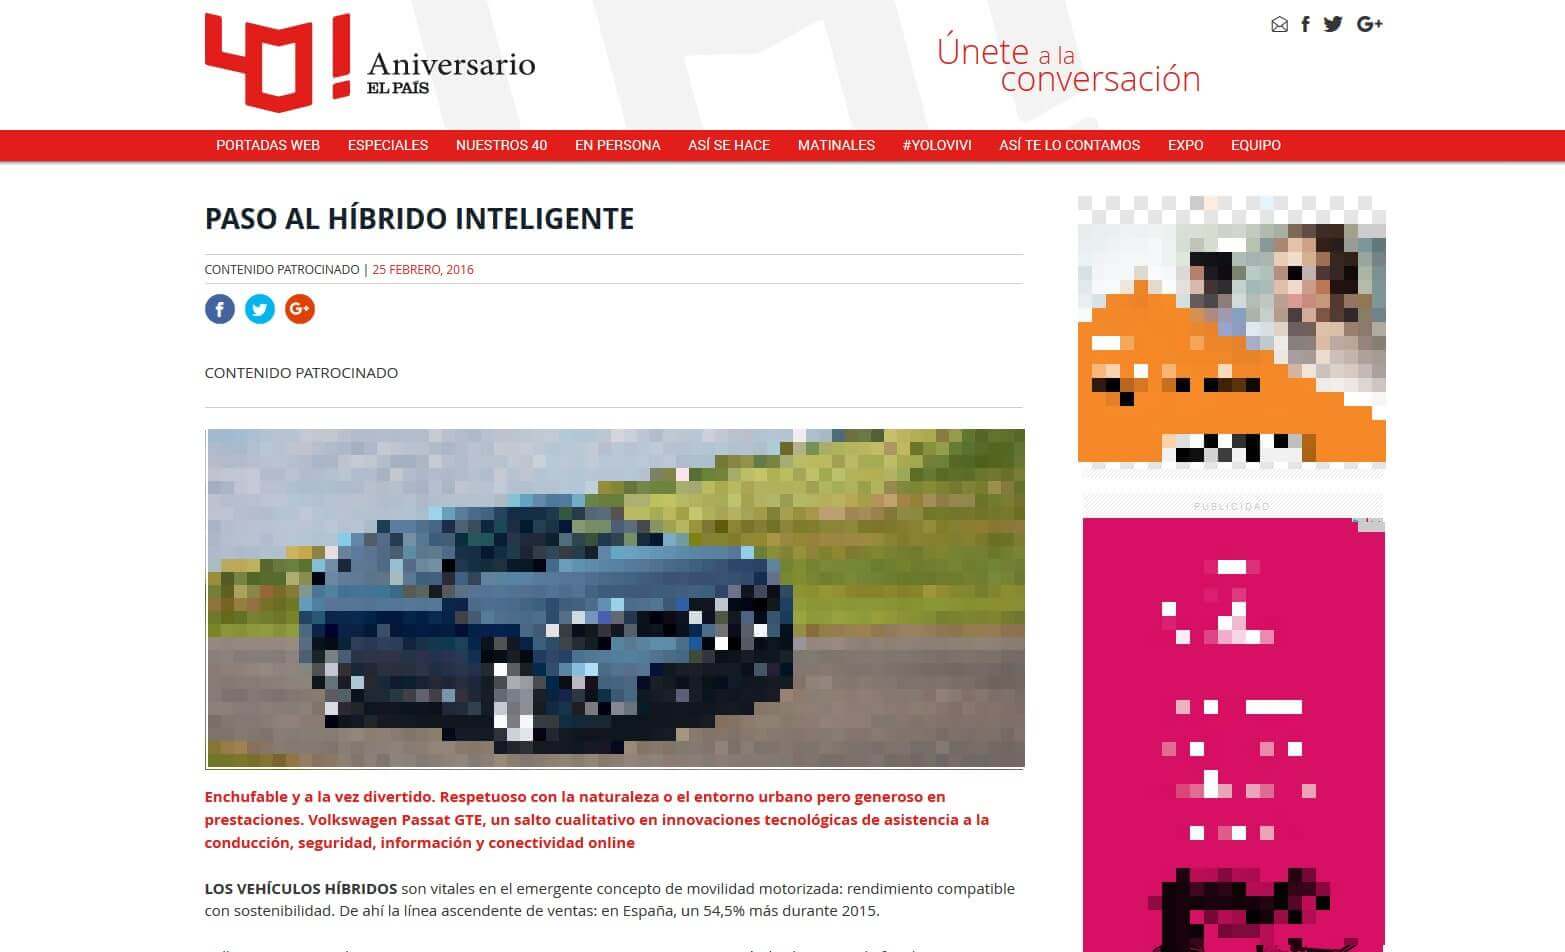 Captura de pantalla de contenido patrocinado en El País